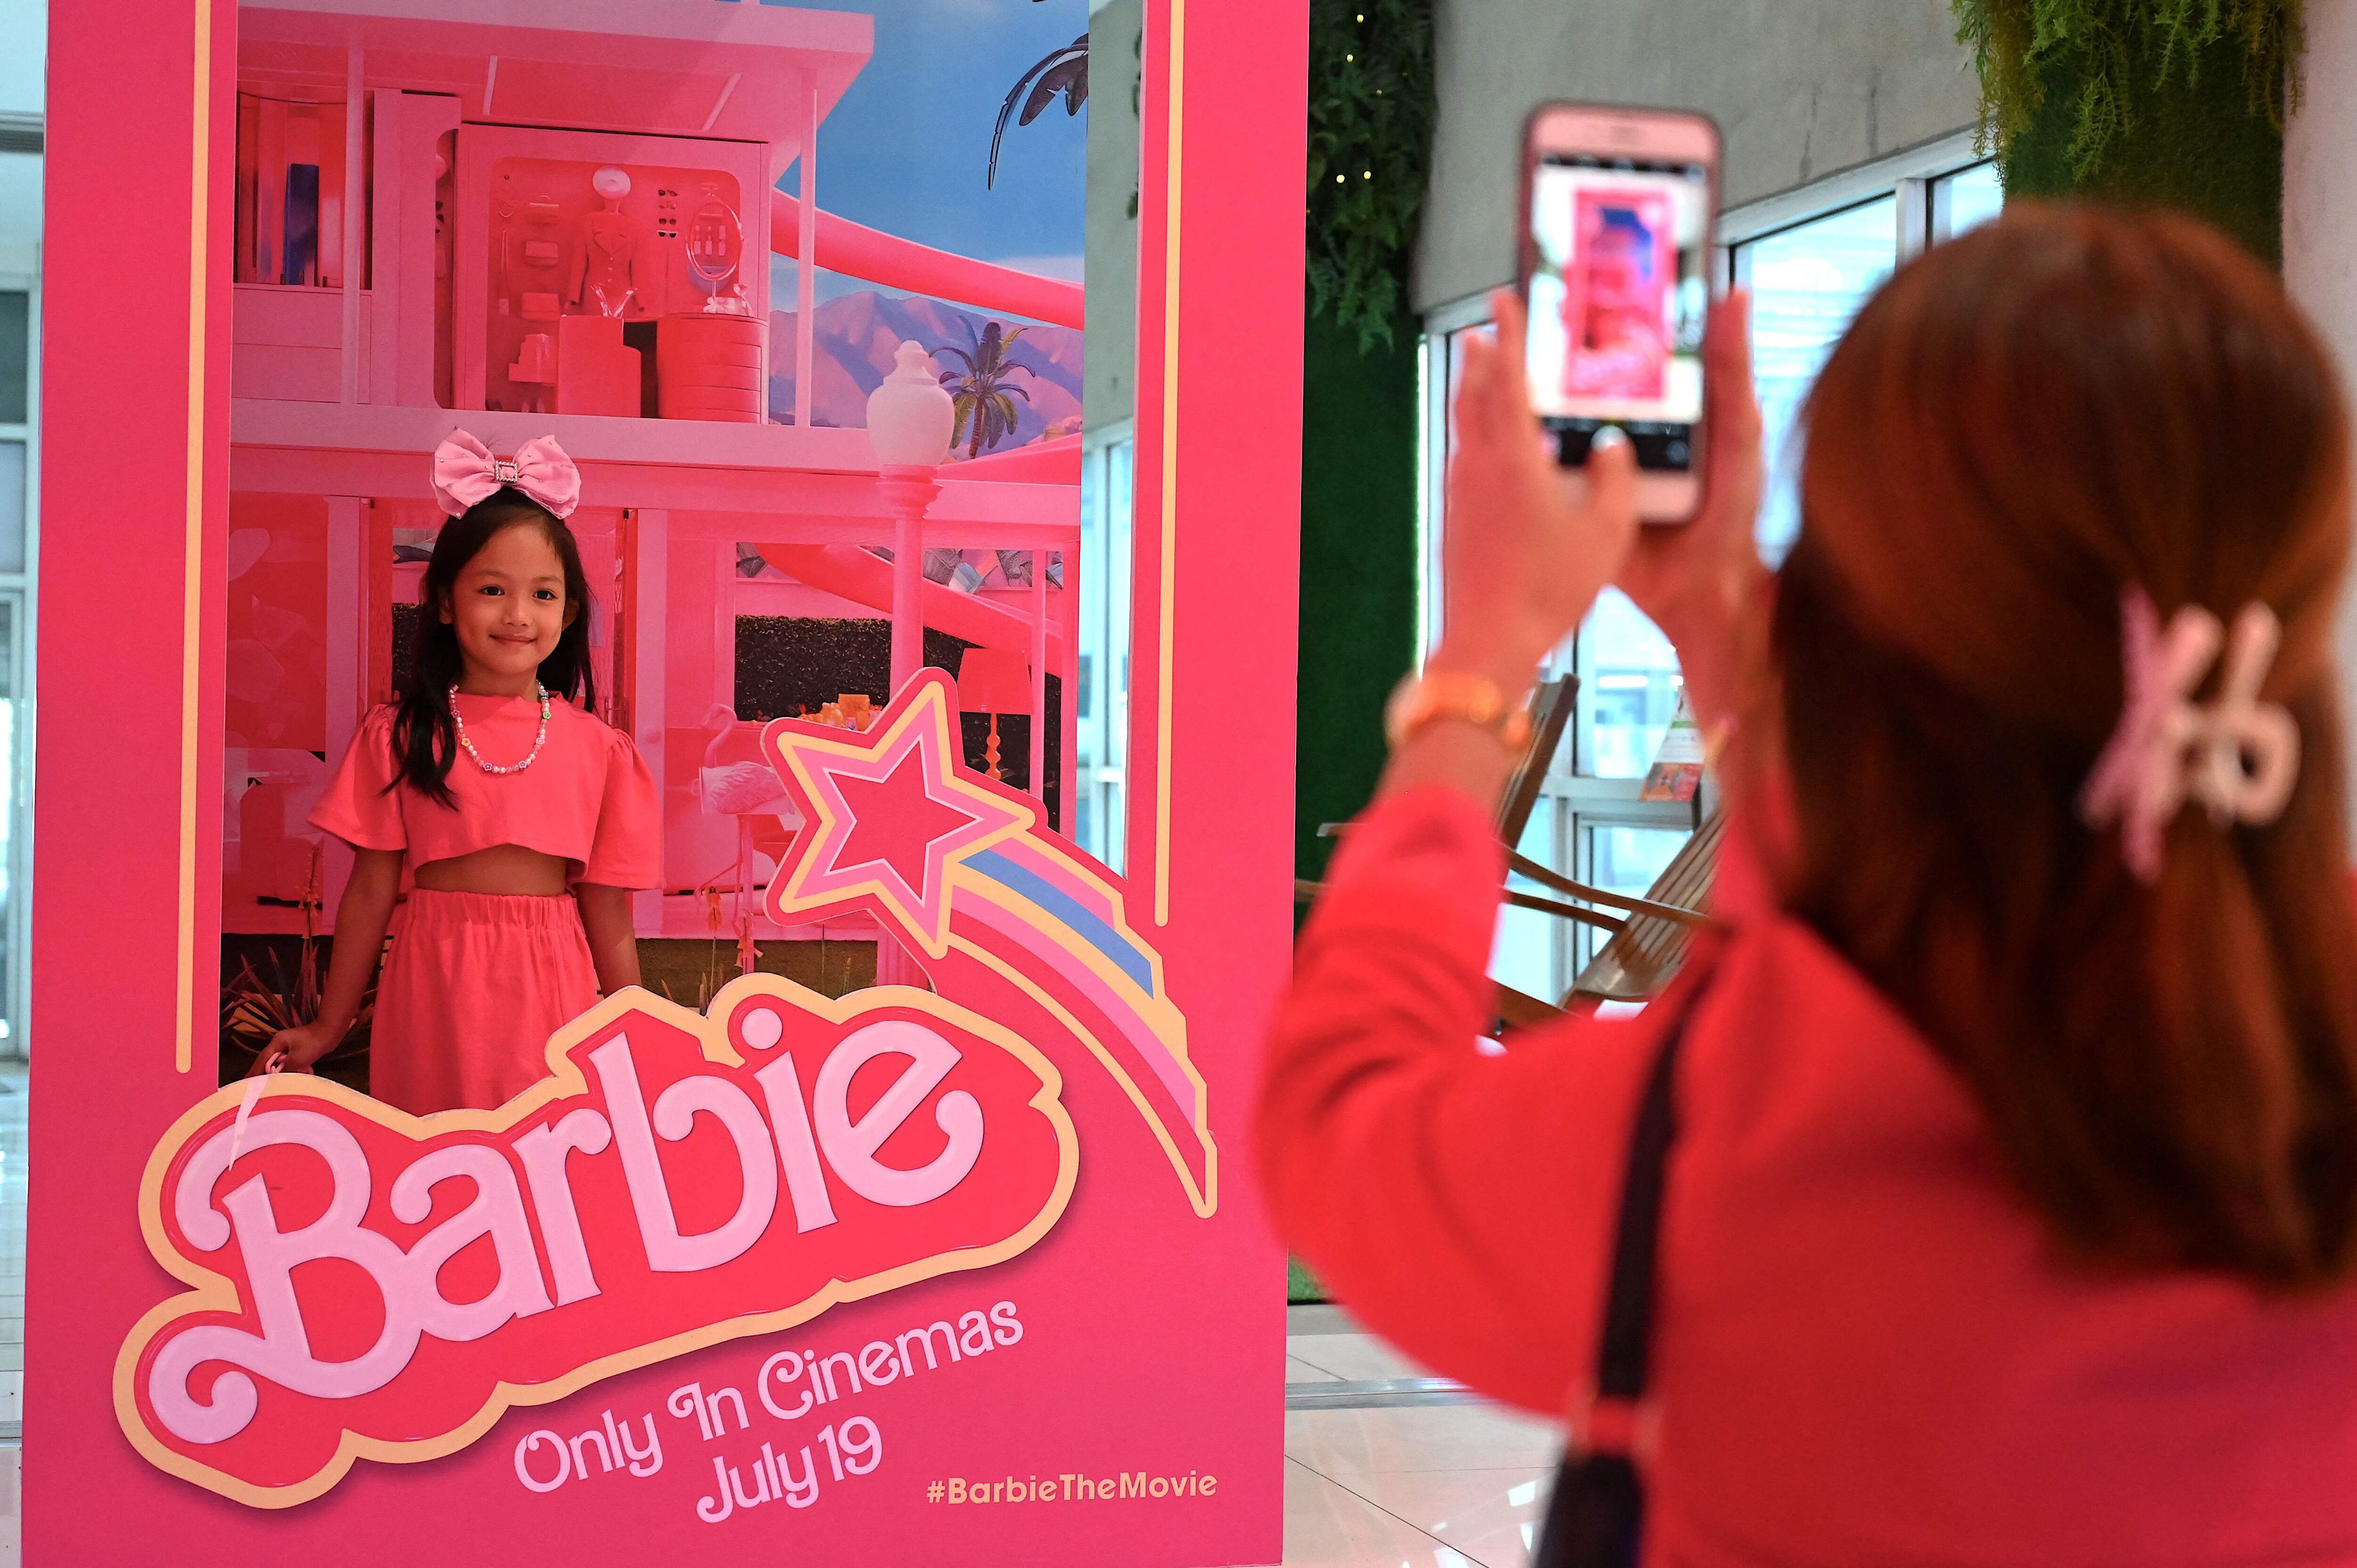 El lanzamiento de la película 'Barbie' generó revuelo en todo el mundo. En la imagen, una niña posa dentro de una caja de muñecas de tamaño real alusiva a la película 'Barbie', en el SM North Edsa en Quezon City, Filipinas. Fotografía: